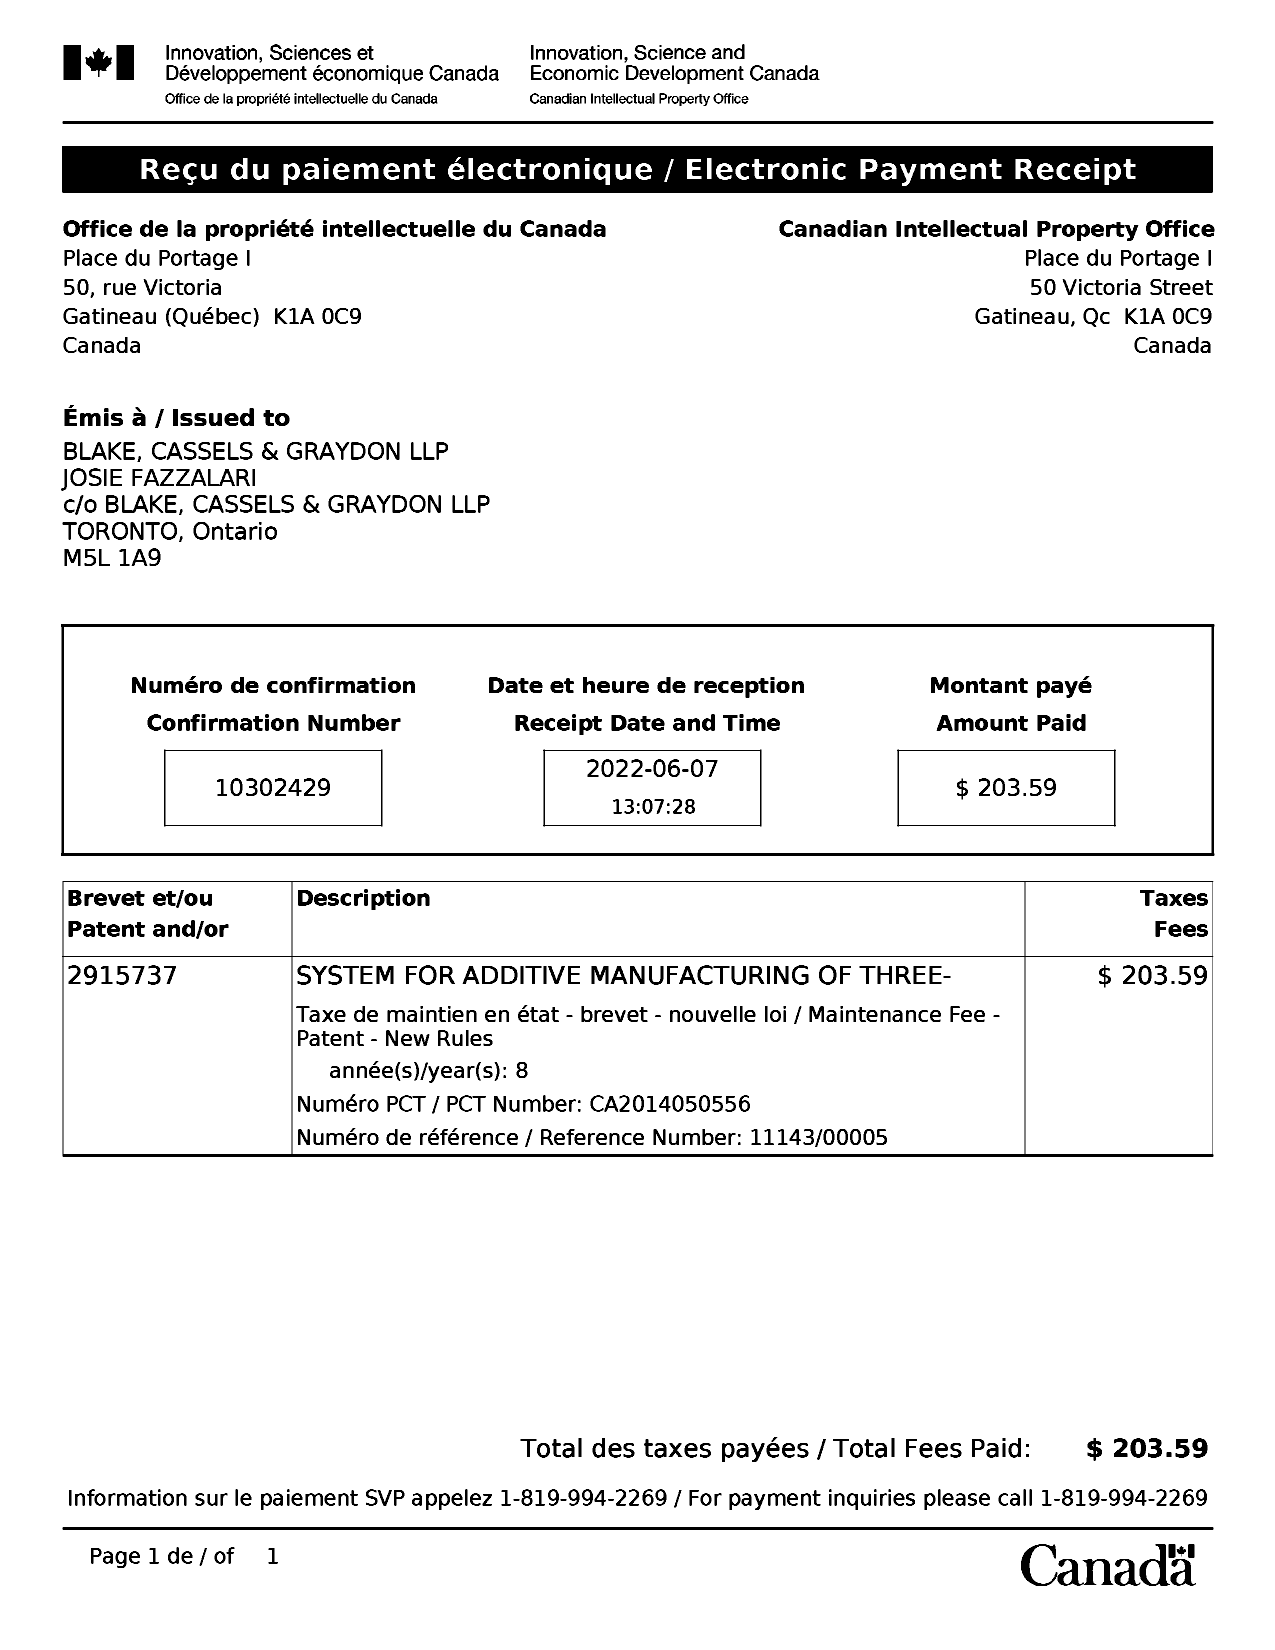 Document de brevet canadien 2915737. Paiement de taxe périodique 20220607. Image 1 de 1